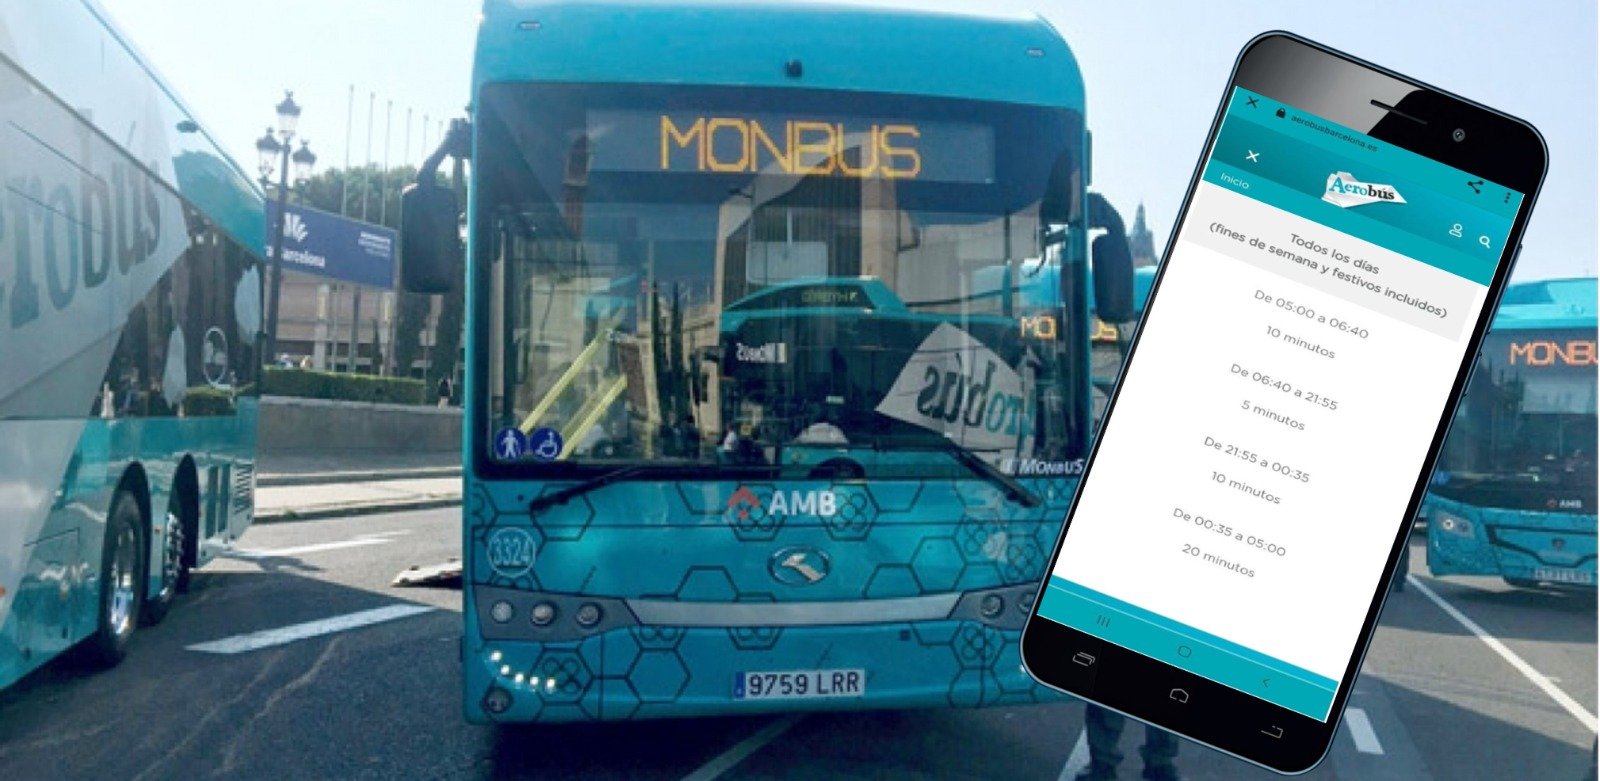 Monbus incompleix amb el compromís d'informar sobre l'horari de l'Aerobús en temps real